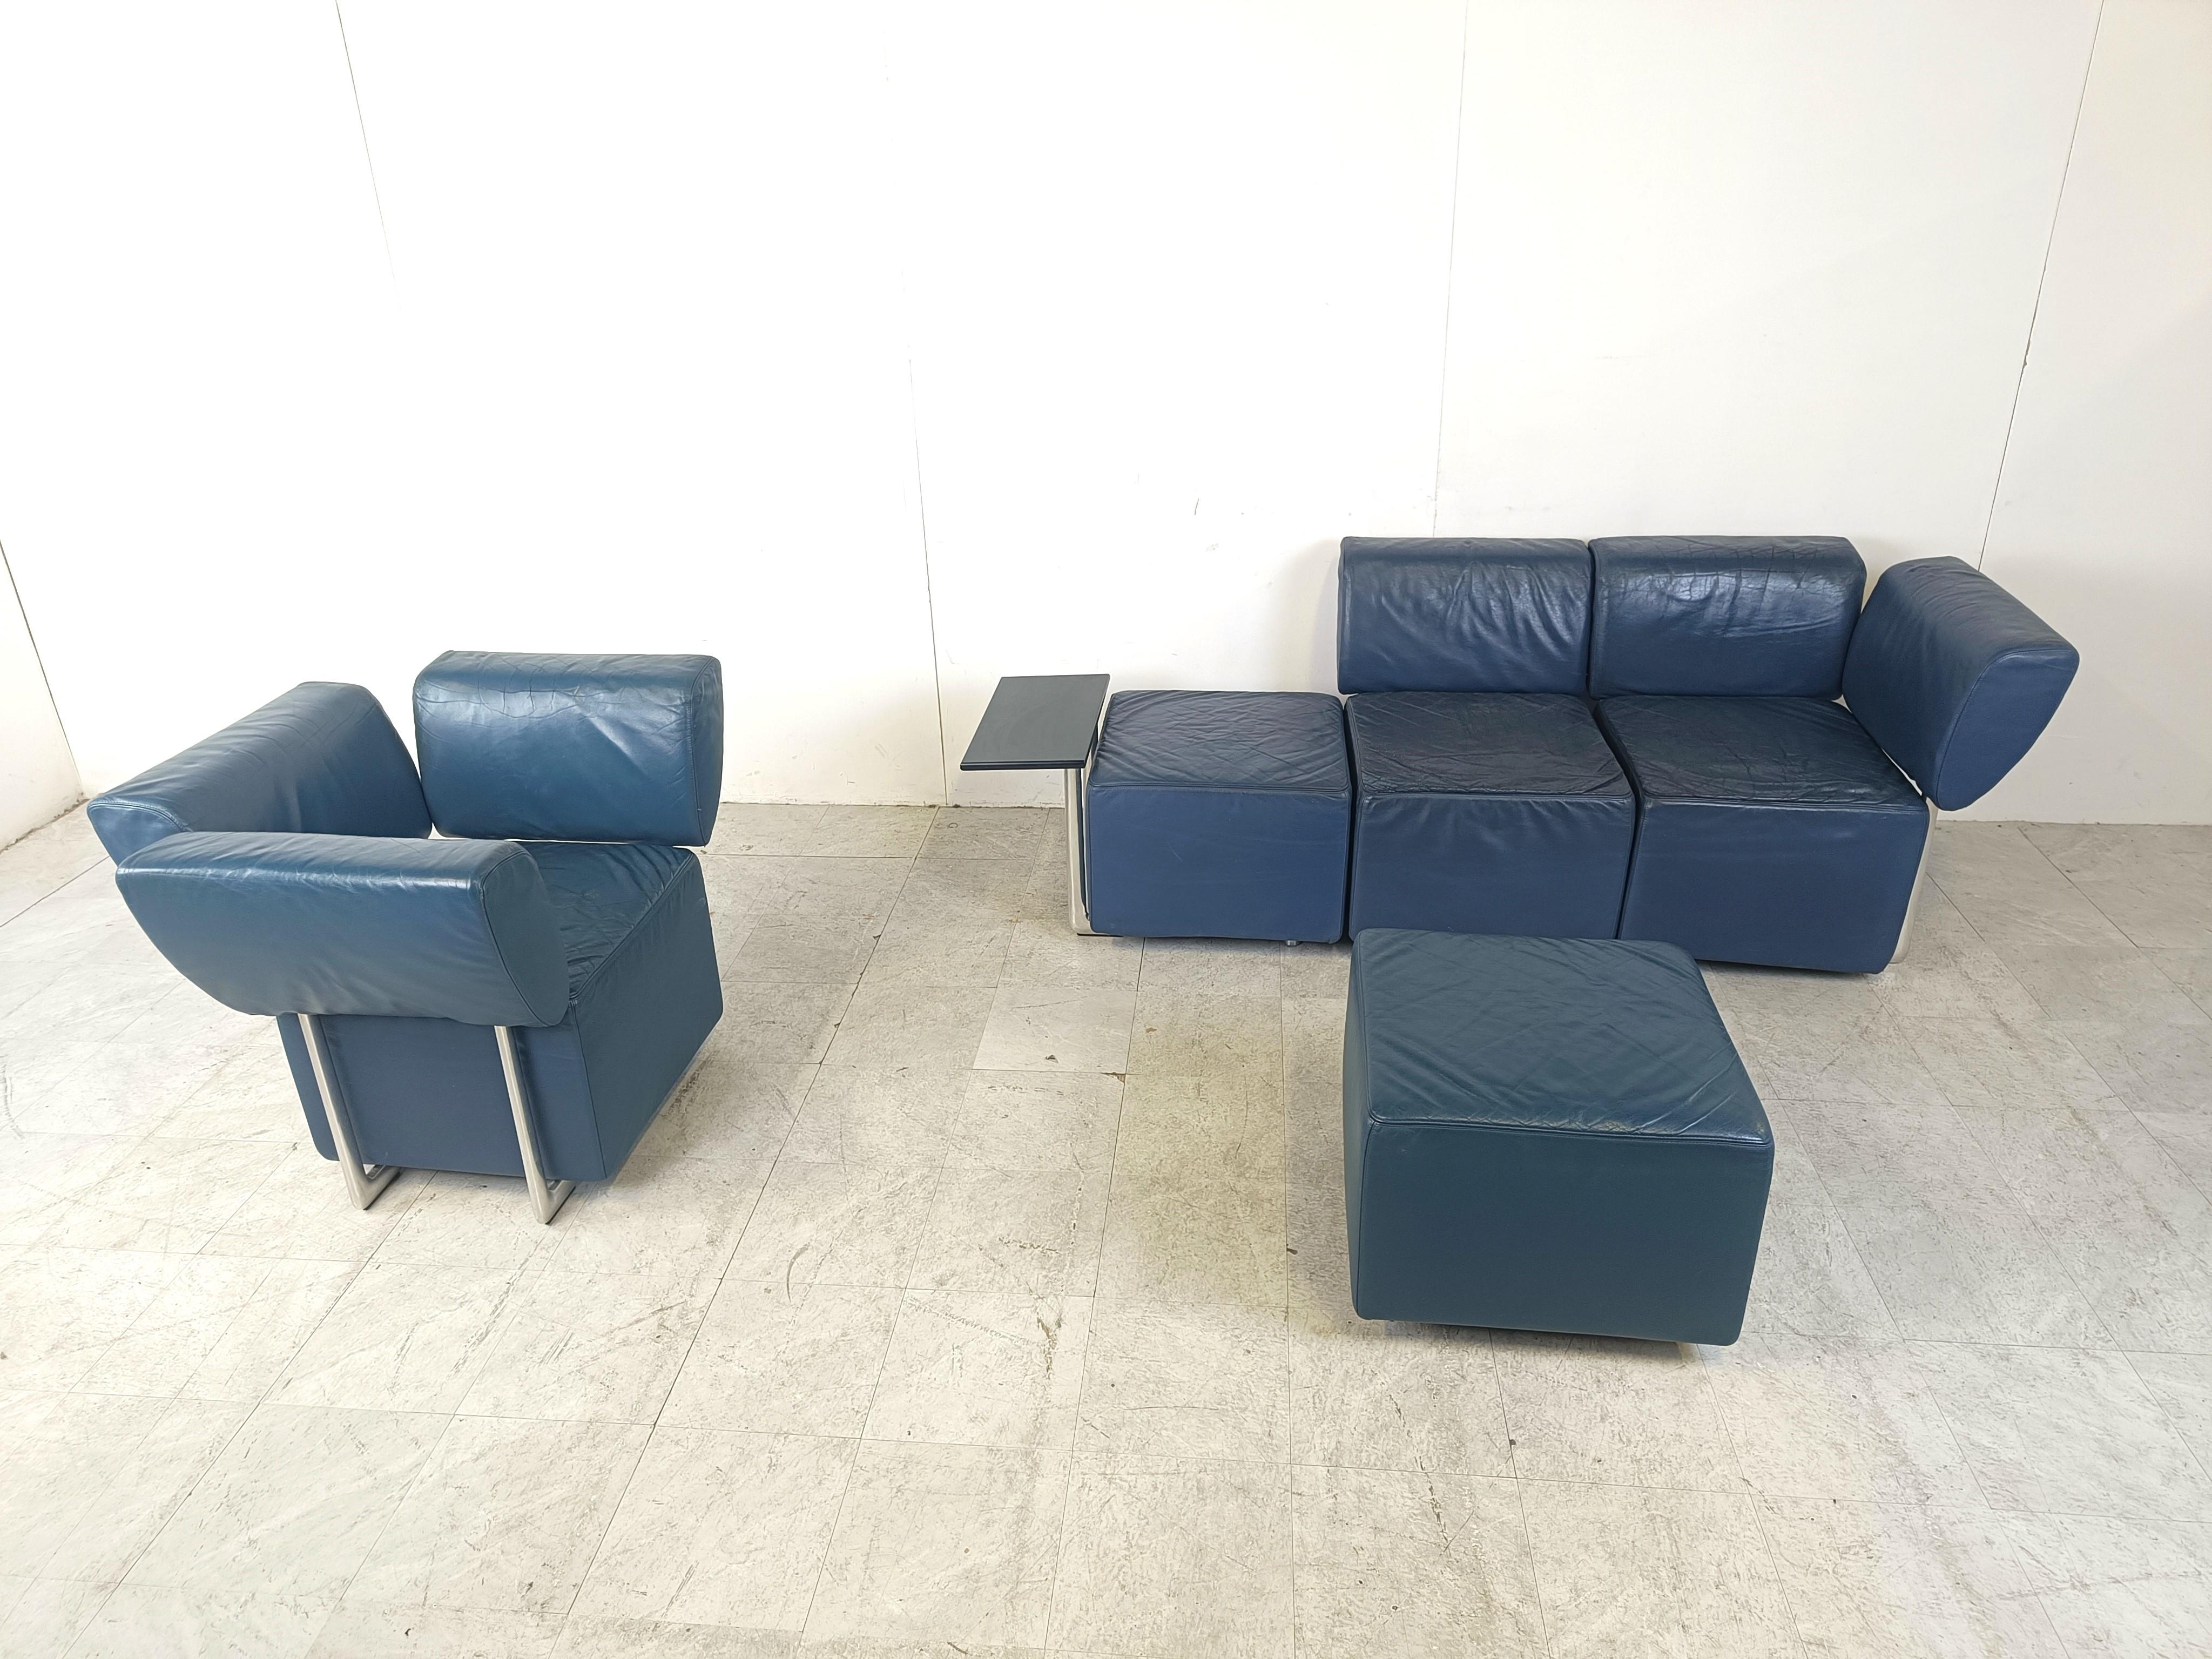 Auffälliges postmodernes Design-Sofamodell 'Clou' von COR und entworfen von Wulf Schneider. 

Gut gestaltet und gepolstert mit hochwertigem blauem Leder auf verchromten Gestellen.

An dem Dreisitzer ist ein kleiner Tisch angebracht.

Das Set ist